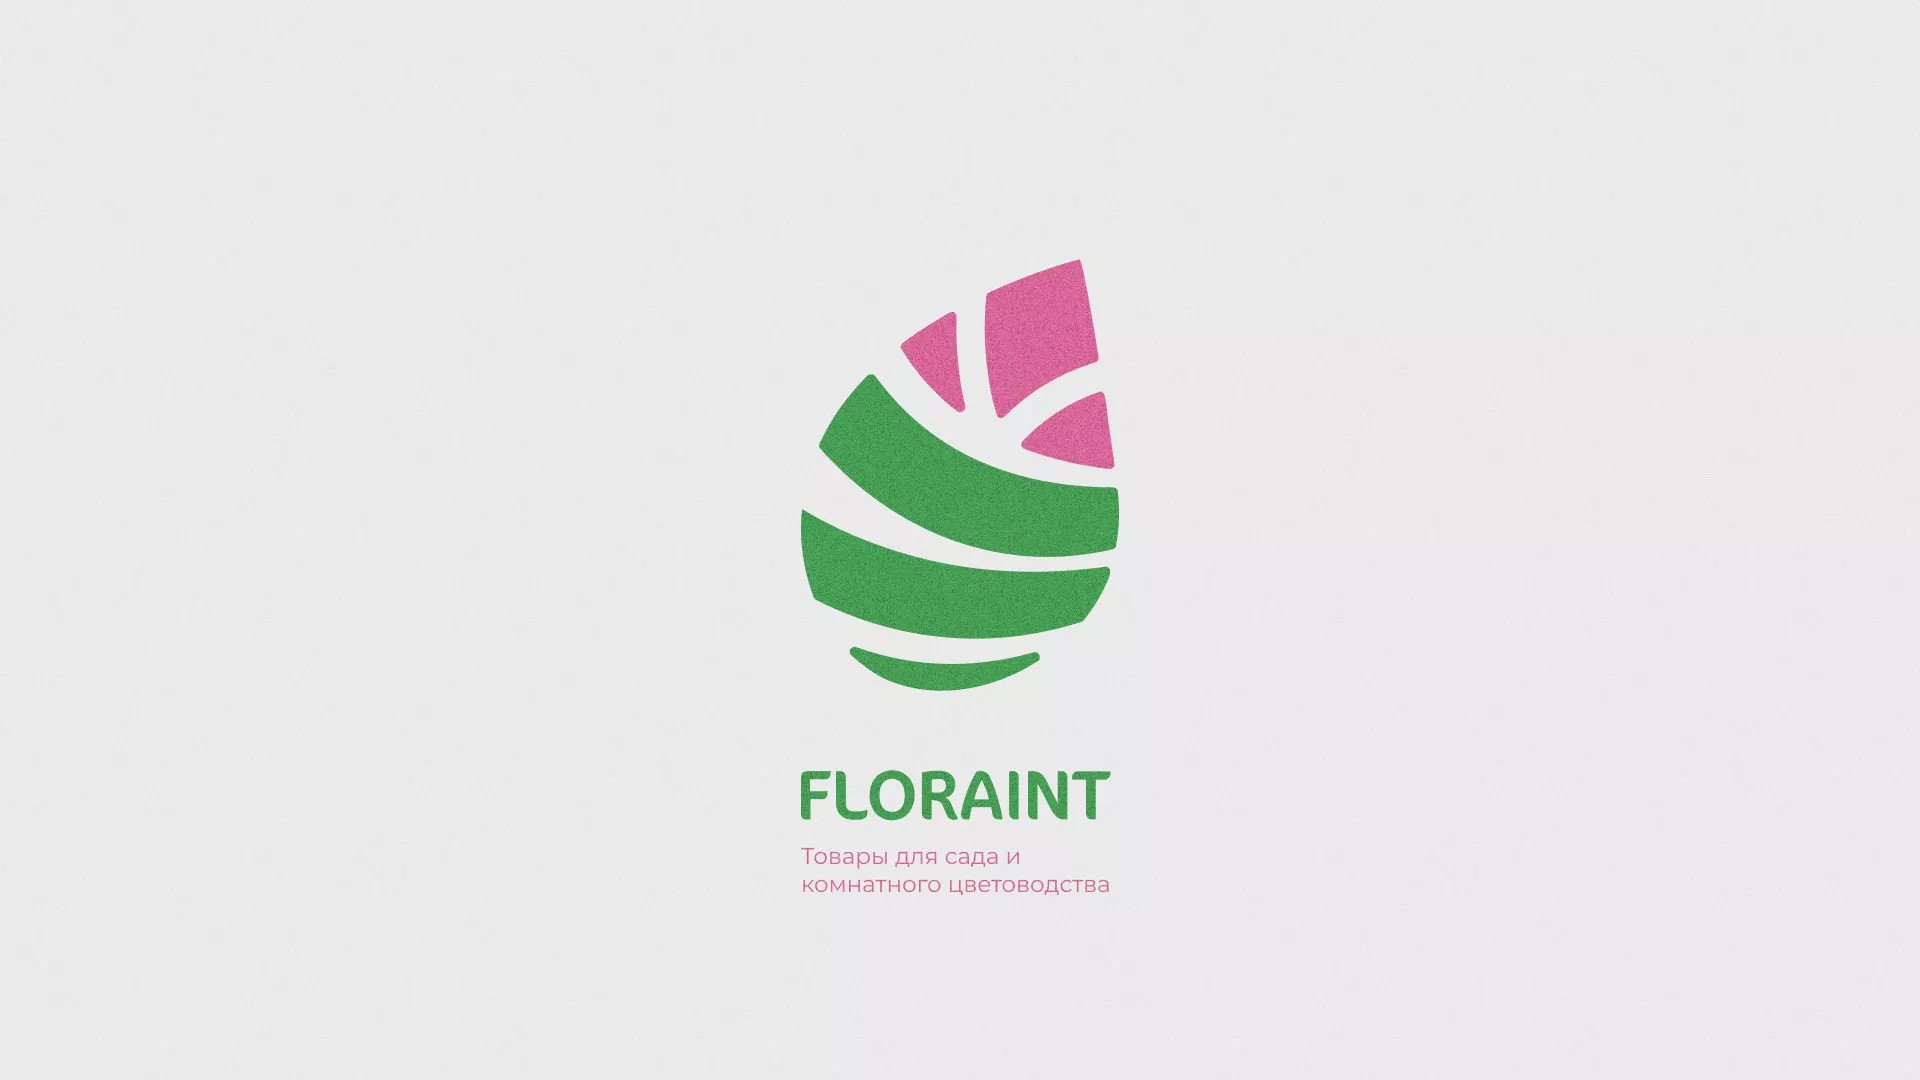 Разработка оформления профиля Instagram для магазина «Floraint» в Вяземском